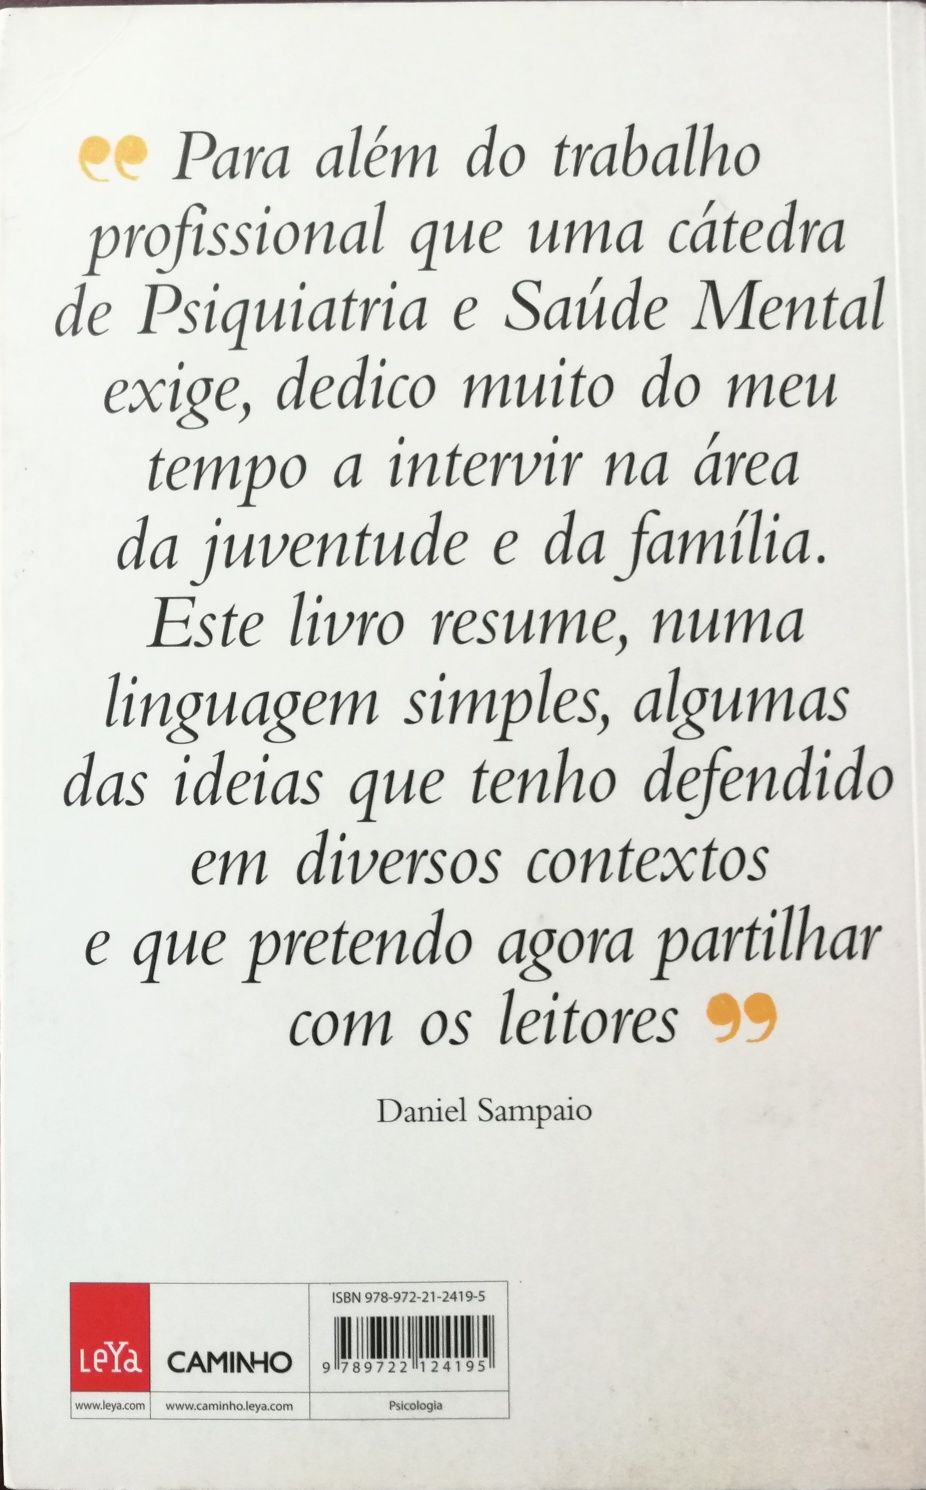 Livro "Da Família, da Escola", Daniel Sampaio